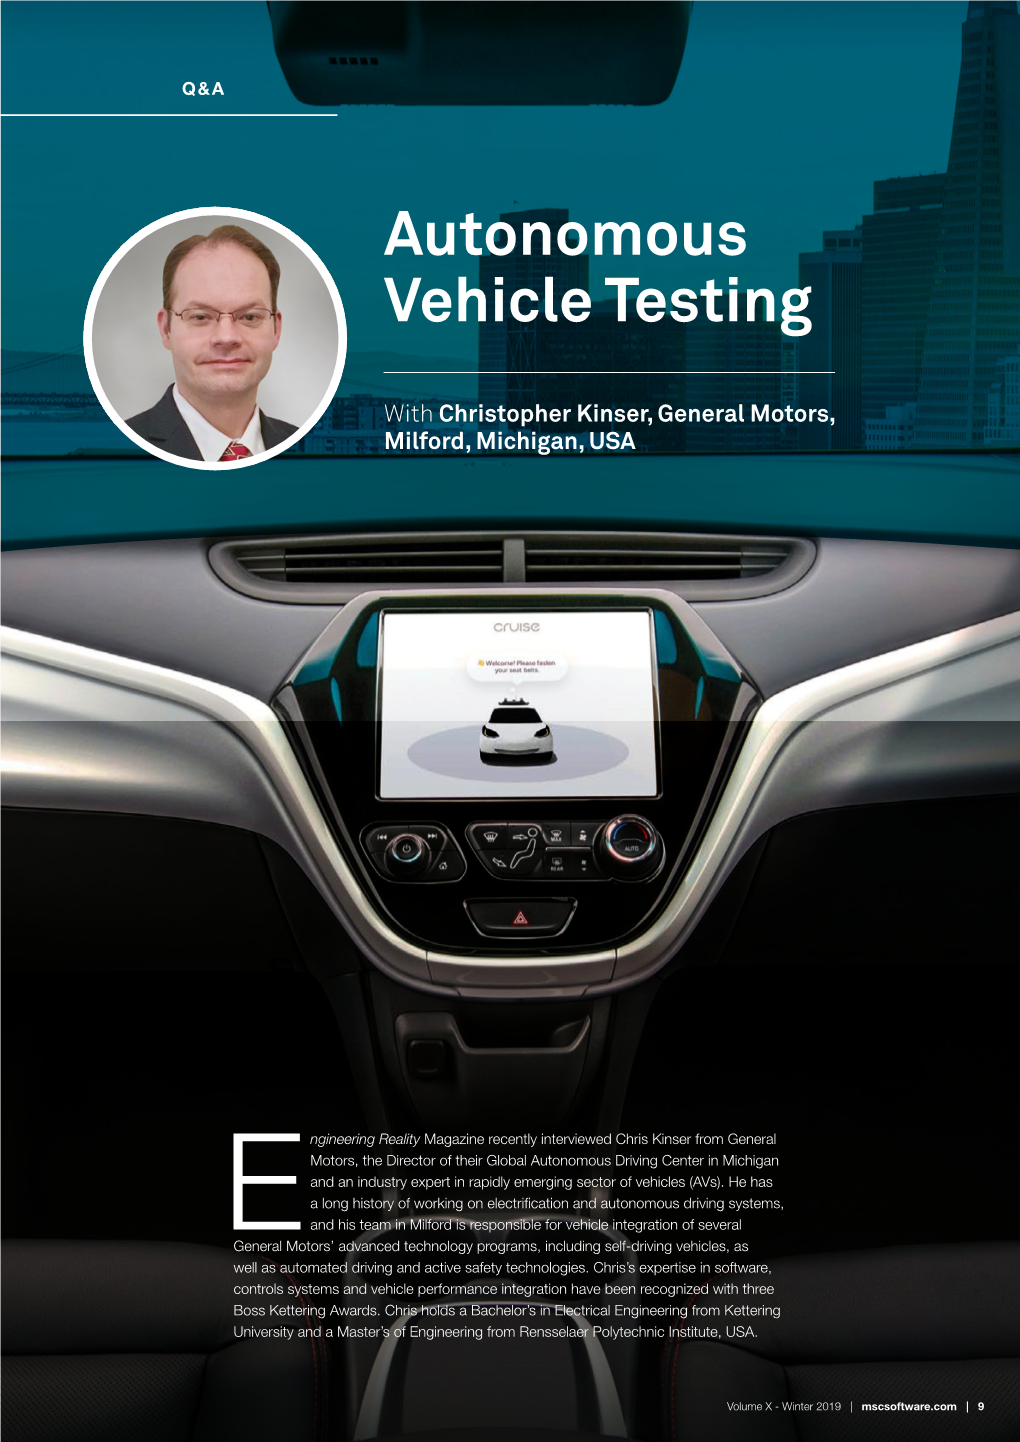 General Motors Advances Virtual Autonomous Driving & Active Safety